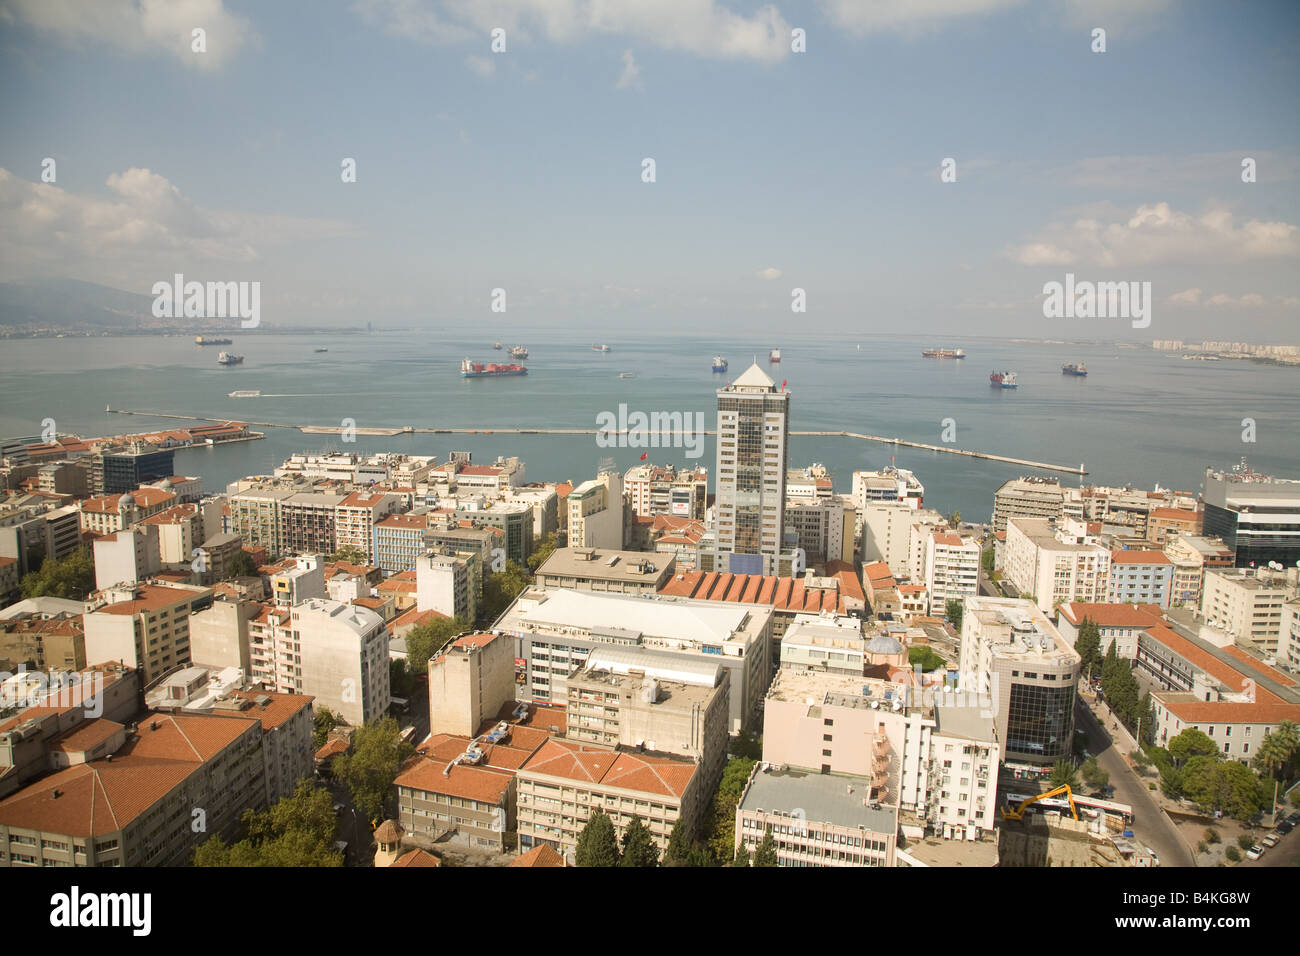 Una vista del puerto de Izmir desde el Hotel Hilton. Foto de stock